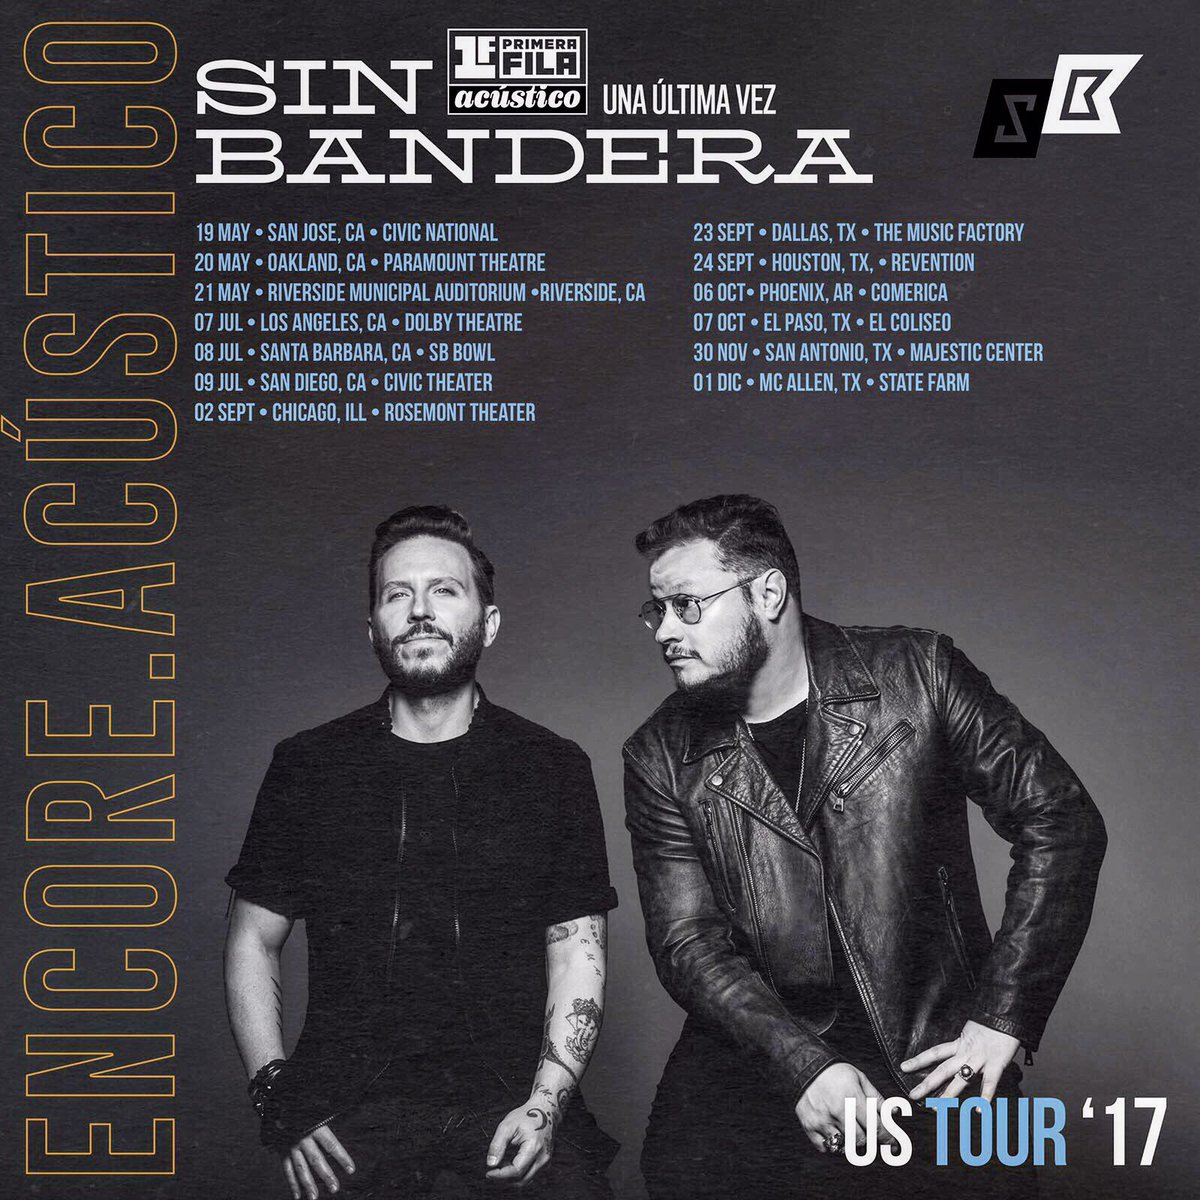 Concierto de Sin Bandera, Una Última Vez Tour, en San Diego, CA, Estados Unidos, Domingo, 09 de julio de 2017